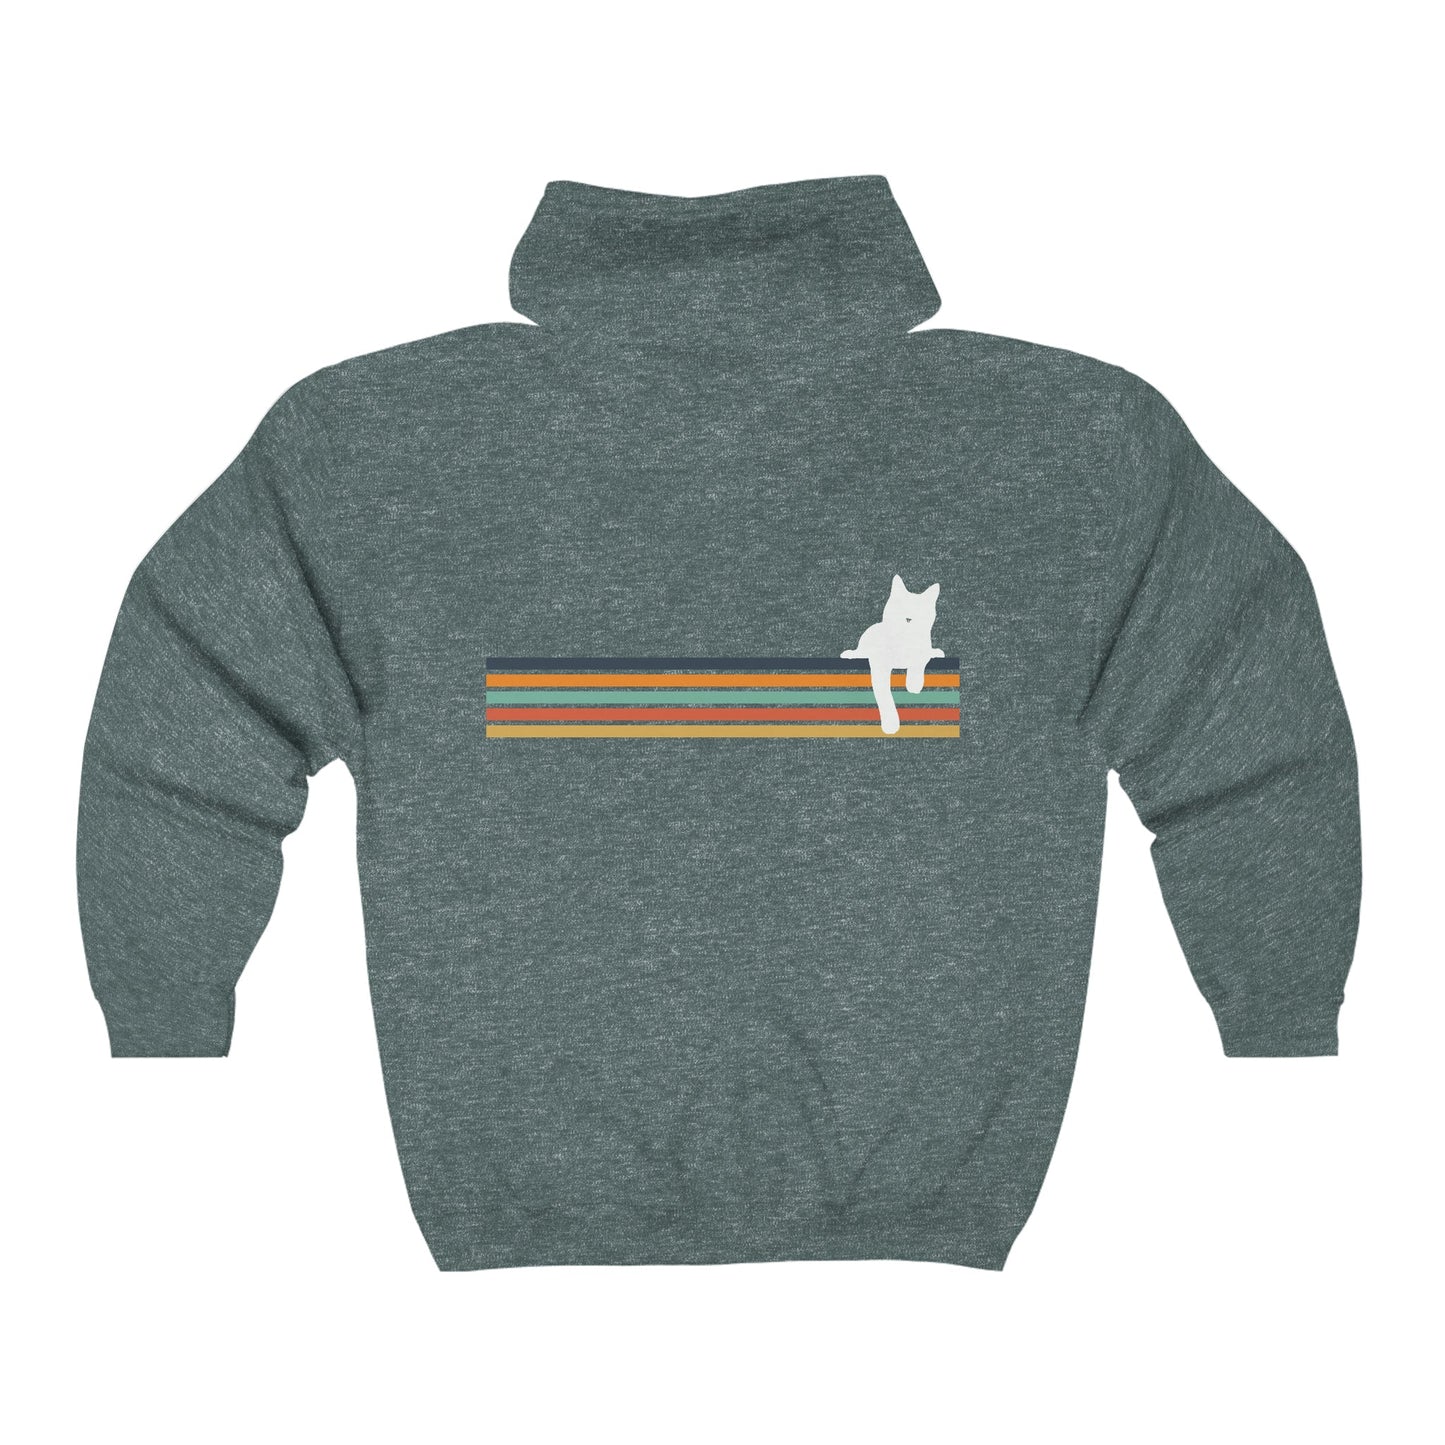 Rainbow Cat | Zip-up Sweatshirt - Detezi Designs-88132783251176396851